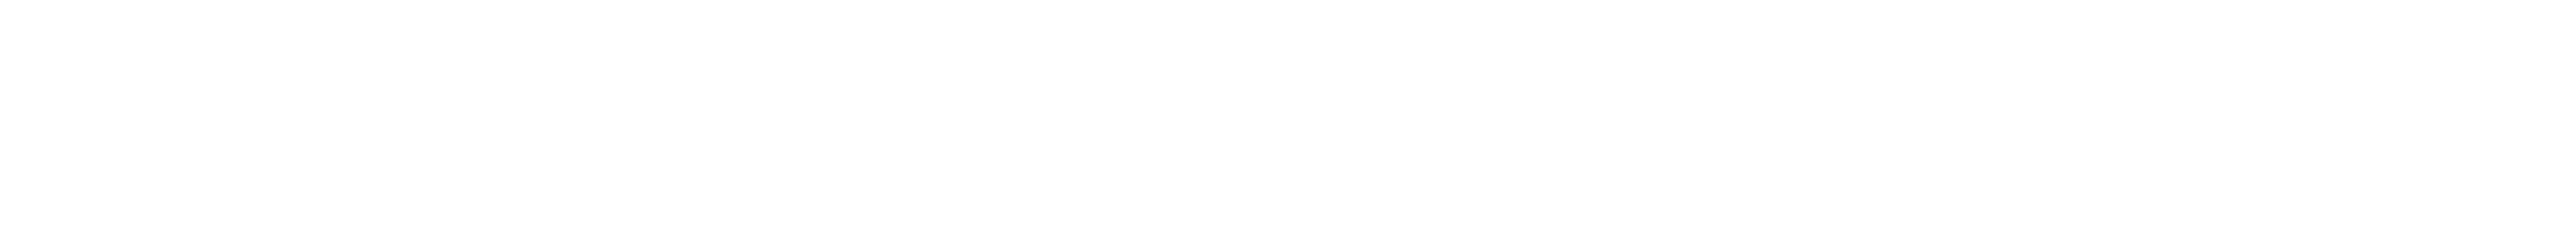 草場妙子さんがOSAJIとつくったヘアケアシリーズとボディゲル「kokyu」の新アイテム kokyu ヘアモイストスムーザー